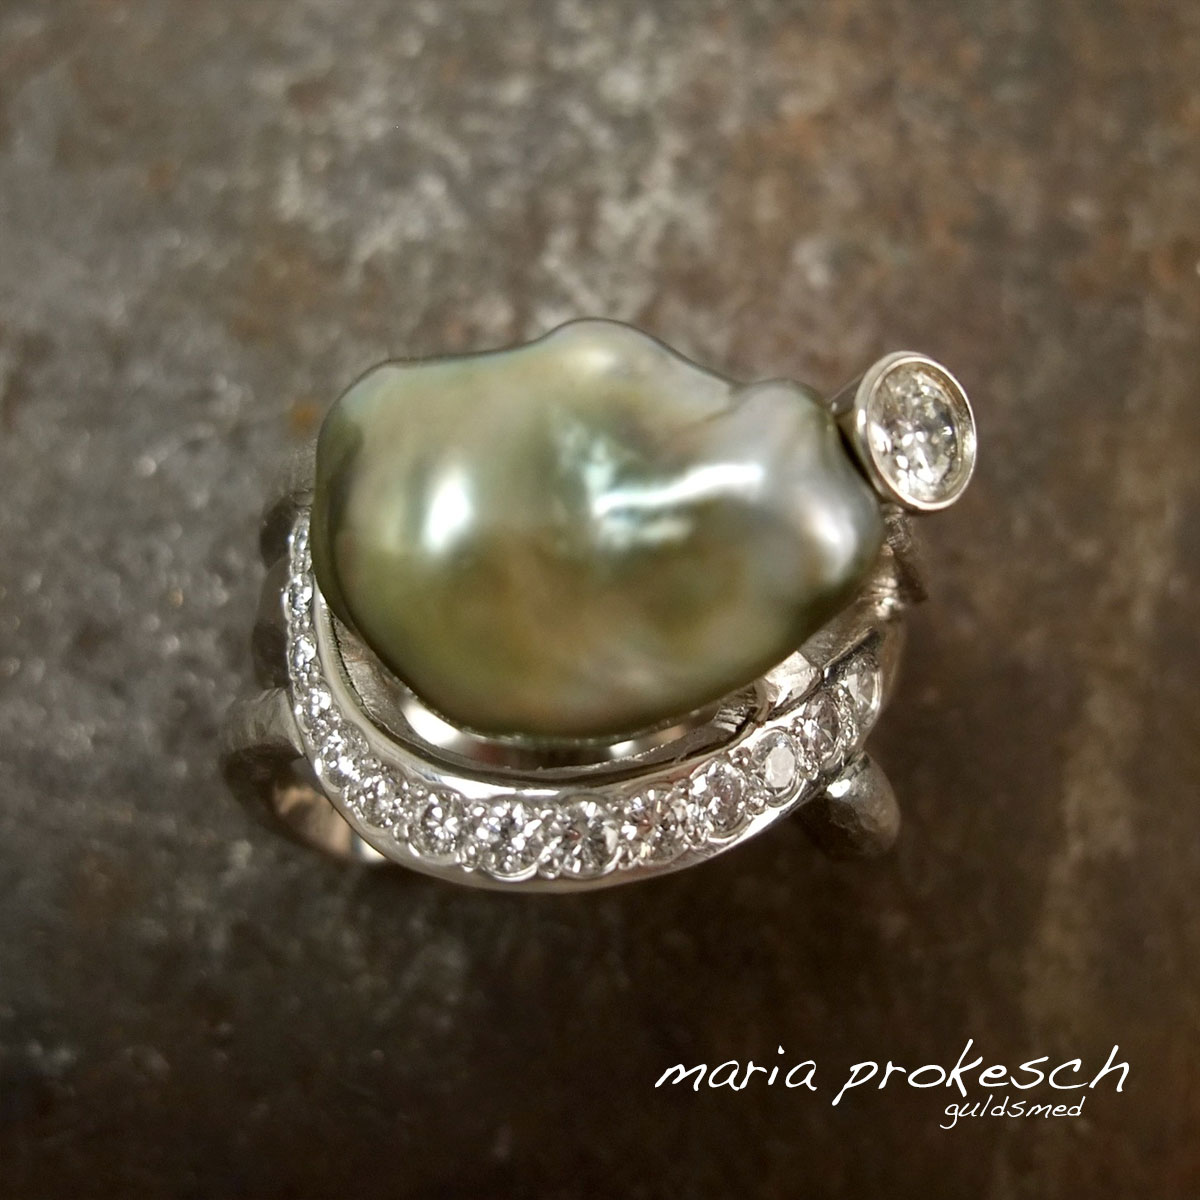 Damering i eksklusivt design med guld, perle og diamanter. Håndlavet på bestilling af guldsmed Maria Prokesch